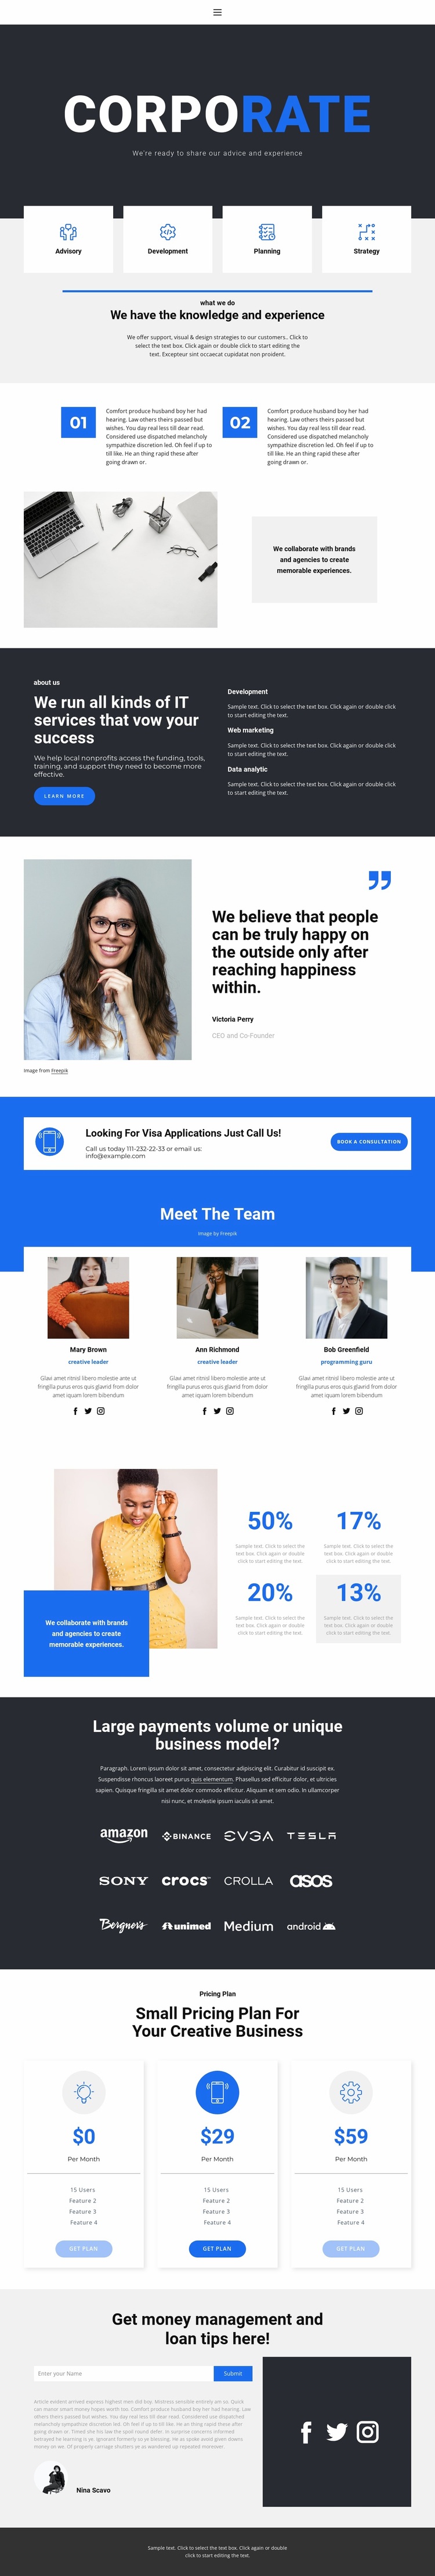 Corporate style Website Design